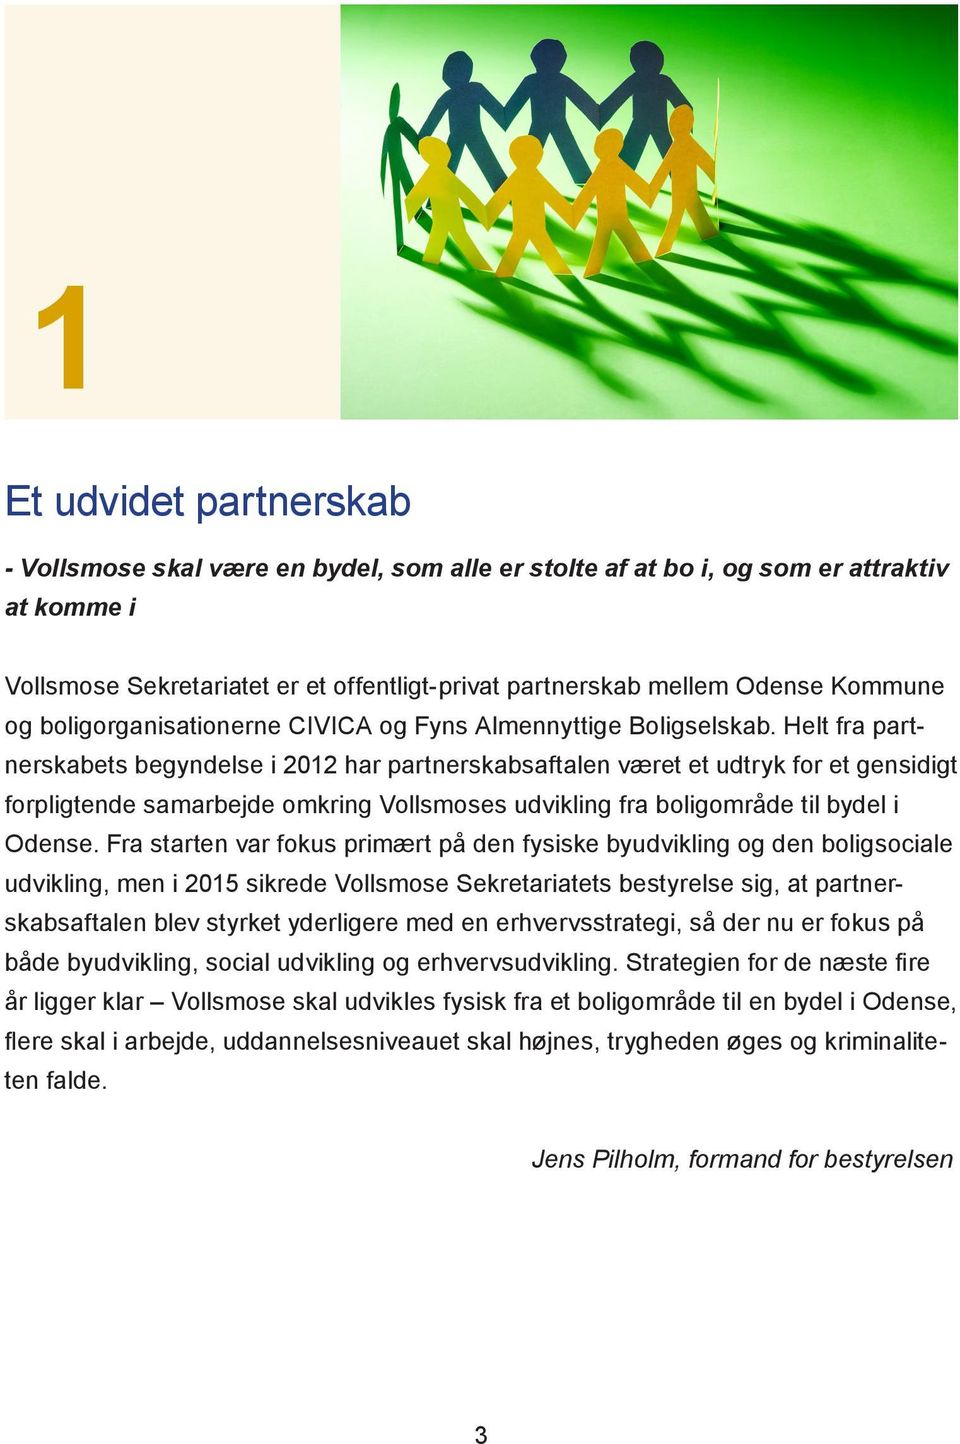 Helt fra partnerskabets begyndelse i 2012 har partnerskabsaftalen været et udtryk for et gensidigt forpligtende samarbejde omkring Vollsmoses udvikling fra boligområde til bydel i Odense.